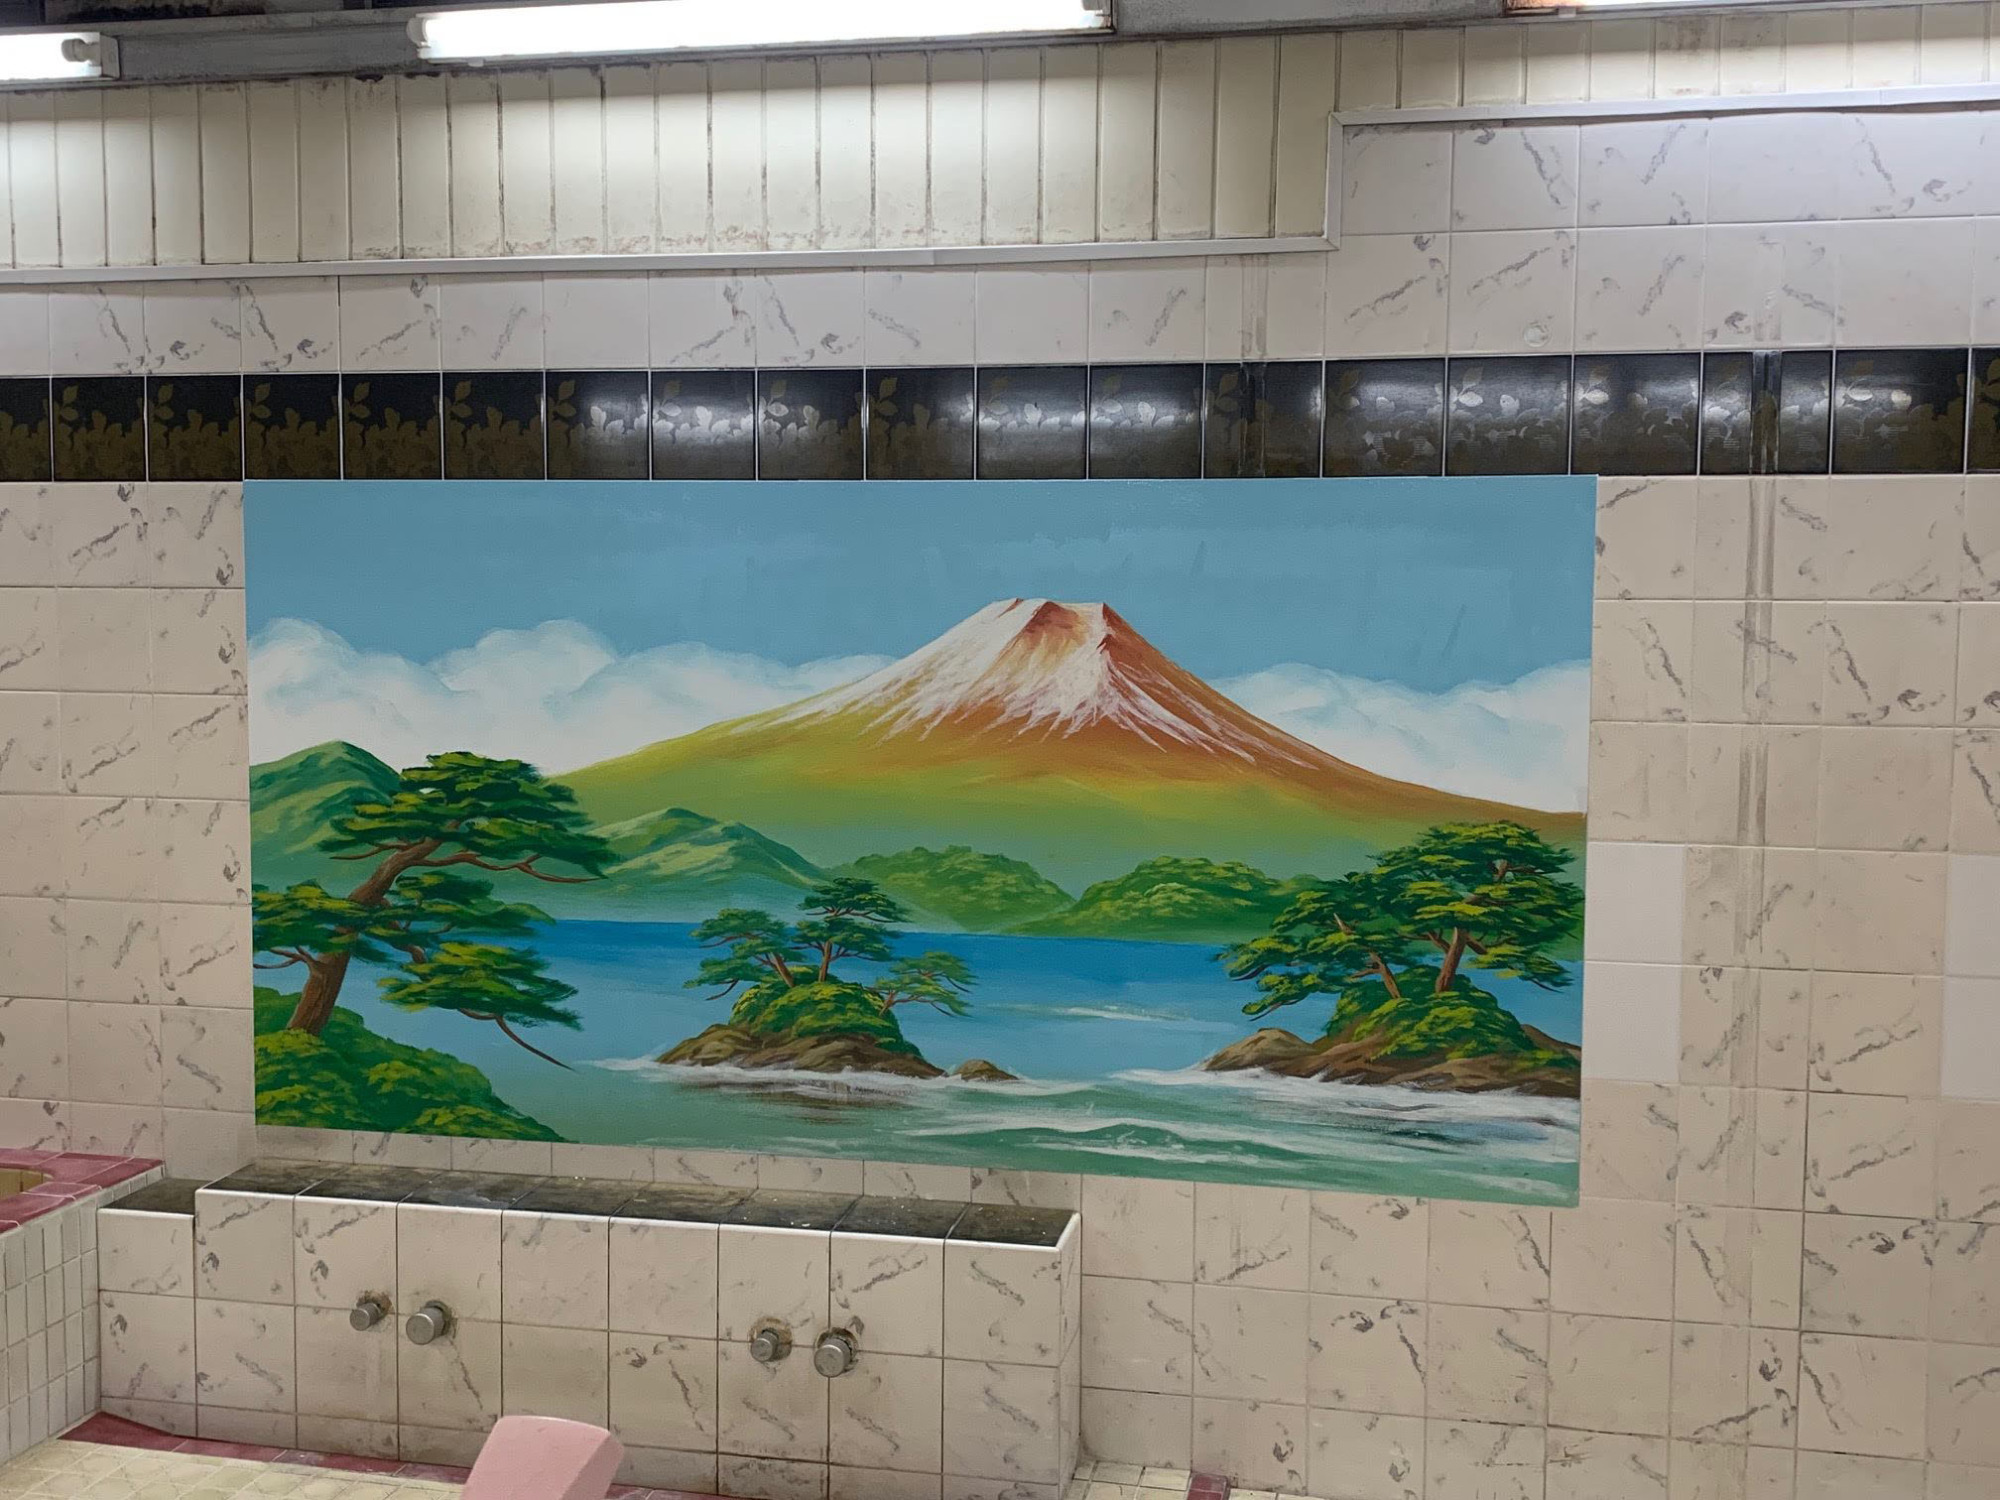 MOUNT FUJI NO.2 PUBLIC BATH & PICTURE JAPANESE BATHHOUSE MINIATURE COLLECTION 